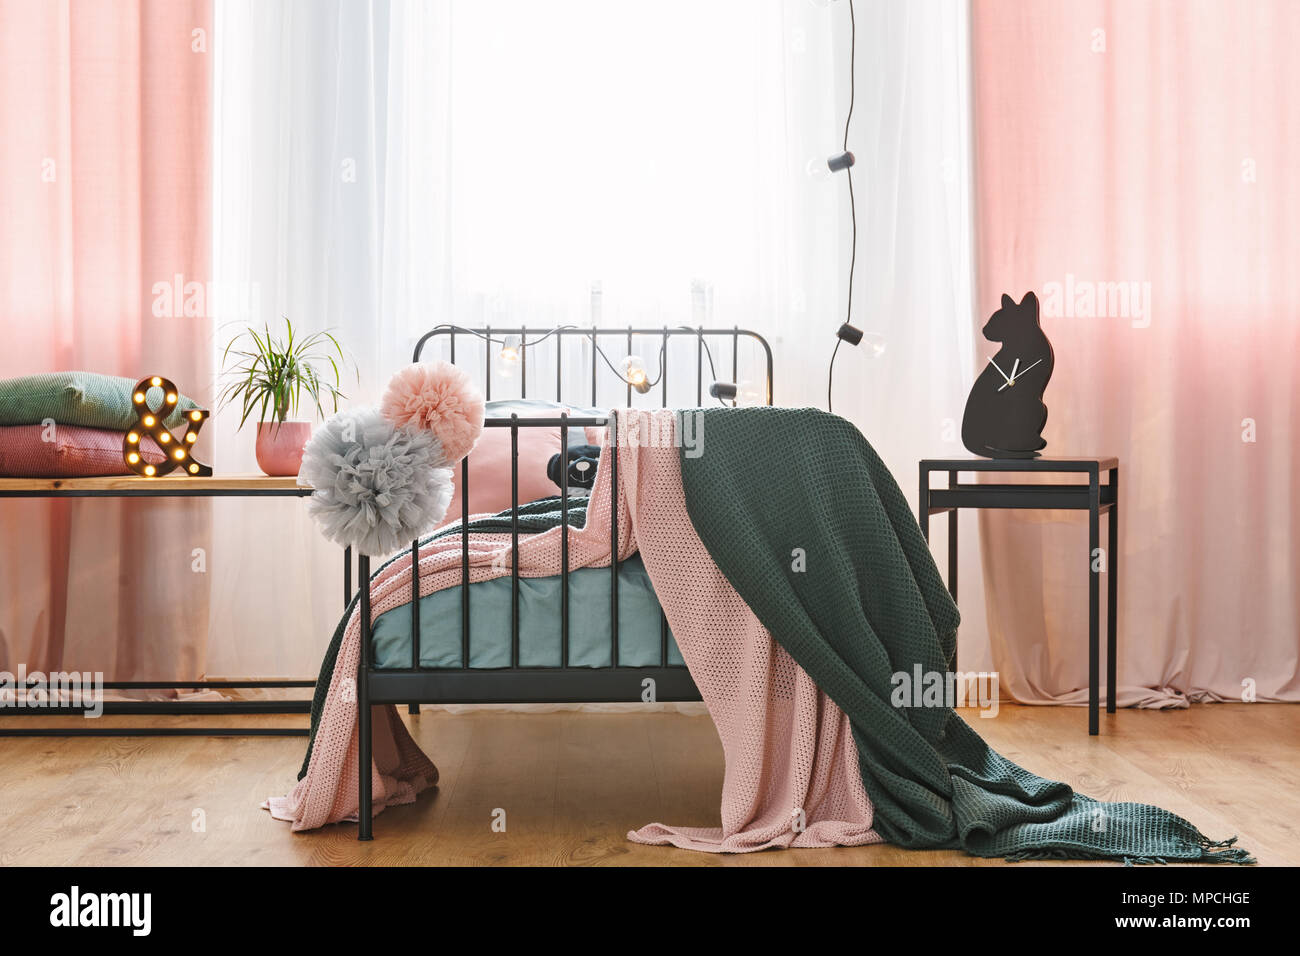 Vorderansicht eines Einzelbett mit Pompons, Wolldecken und pinkfarbenen Vorhängen in einem Schlafzimmer Innenraum Stockfoto